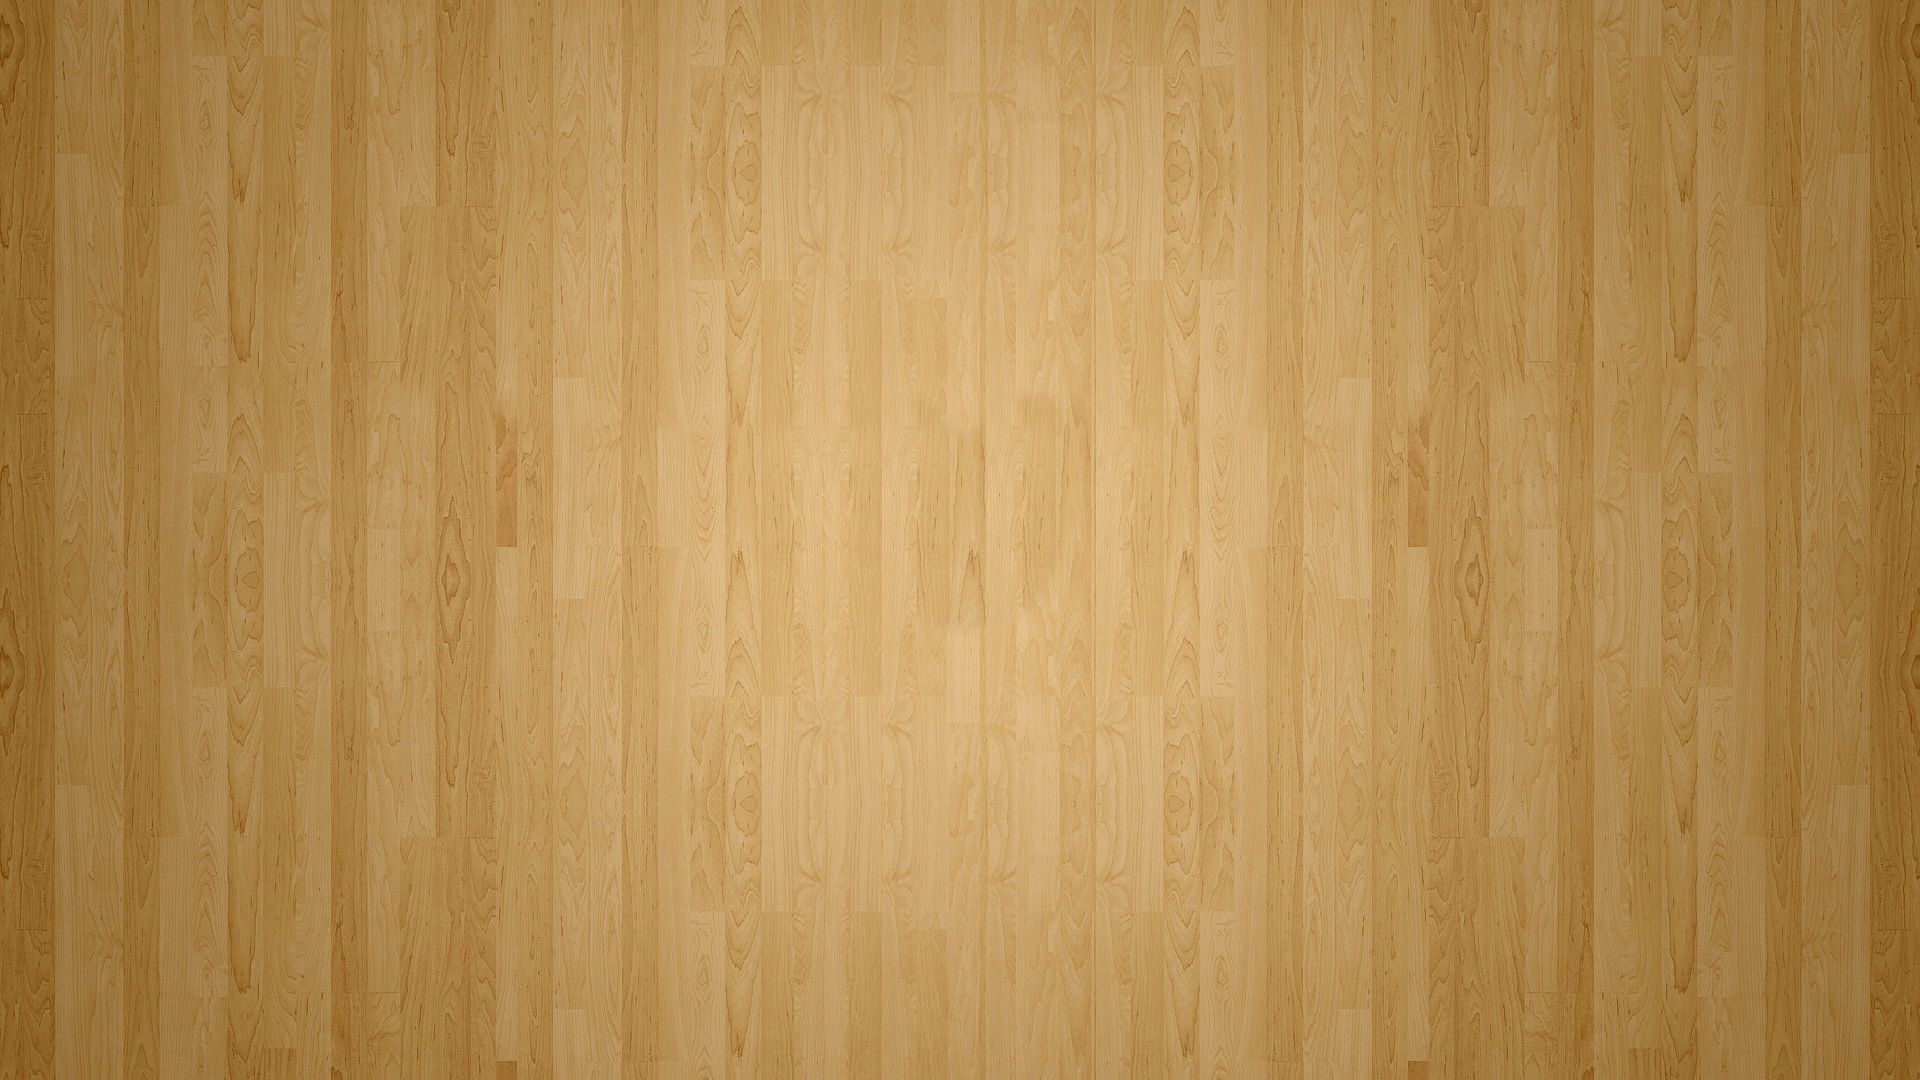 堅材の壁紙,木材,合板,ウッドステイン,褐色,ウッドフローリング